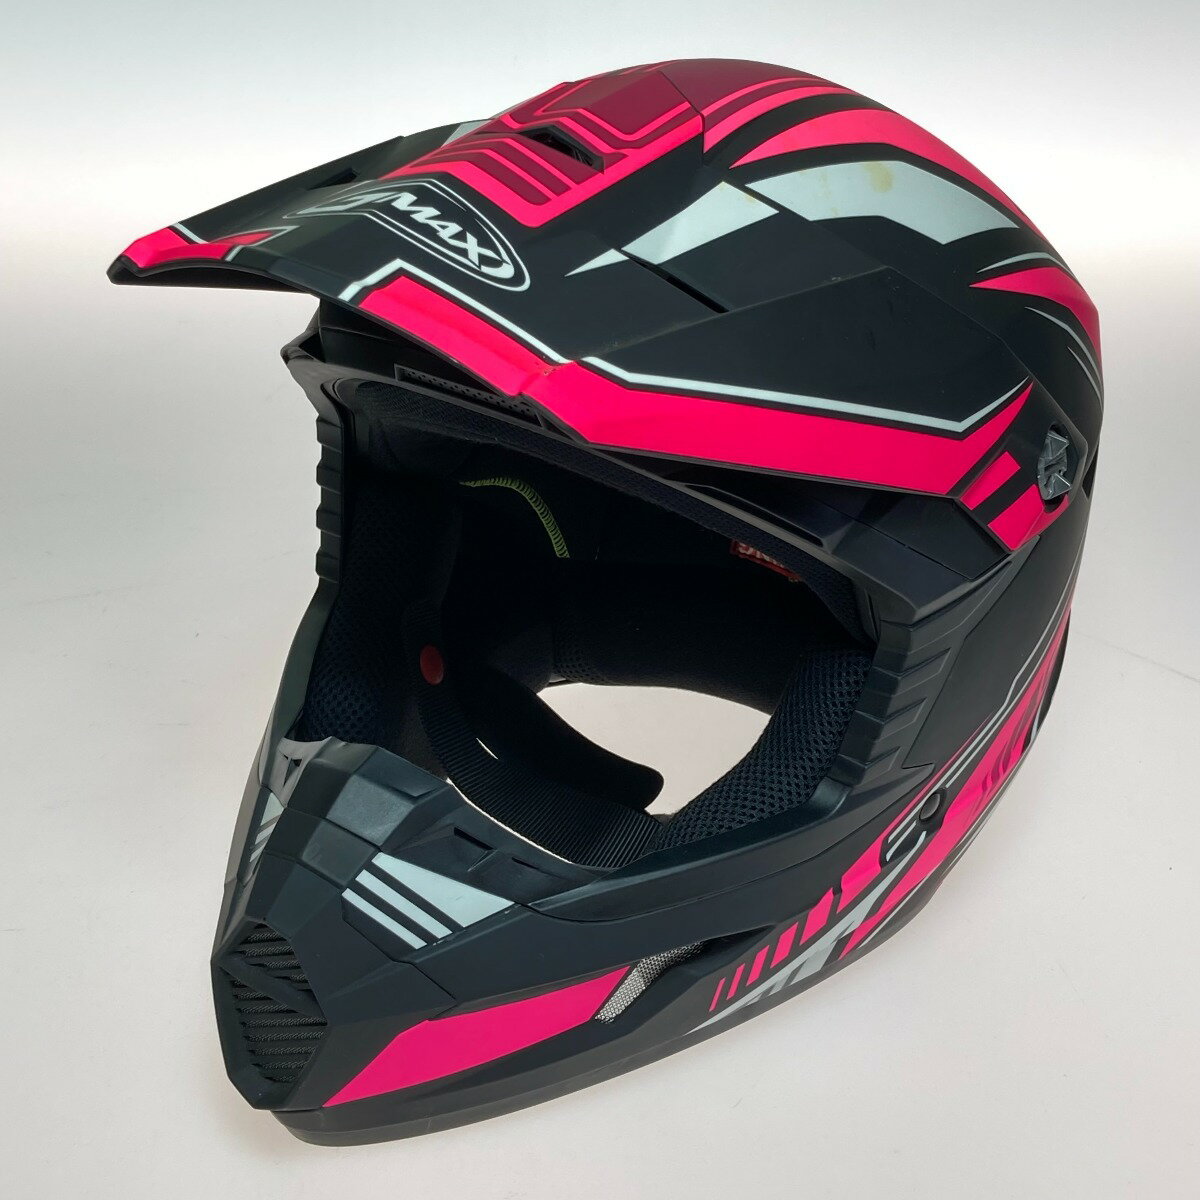 ◎◎【中古】GMAX MX-46 オフロード バイクヘルメット XLサイズ 61-62cm ピンク Bランク